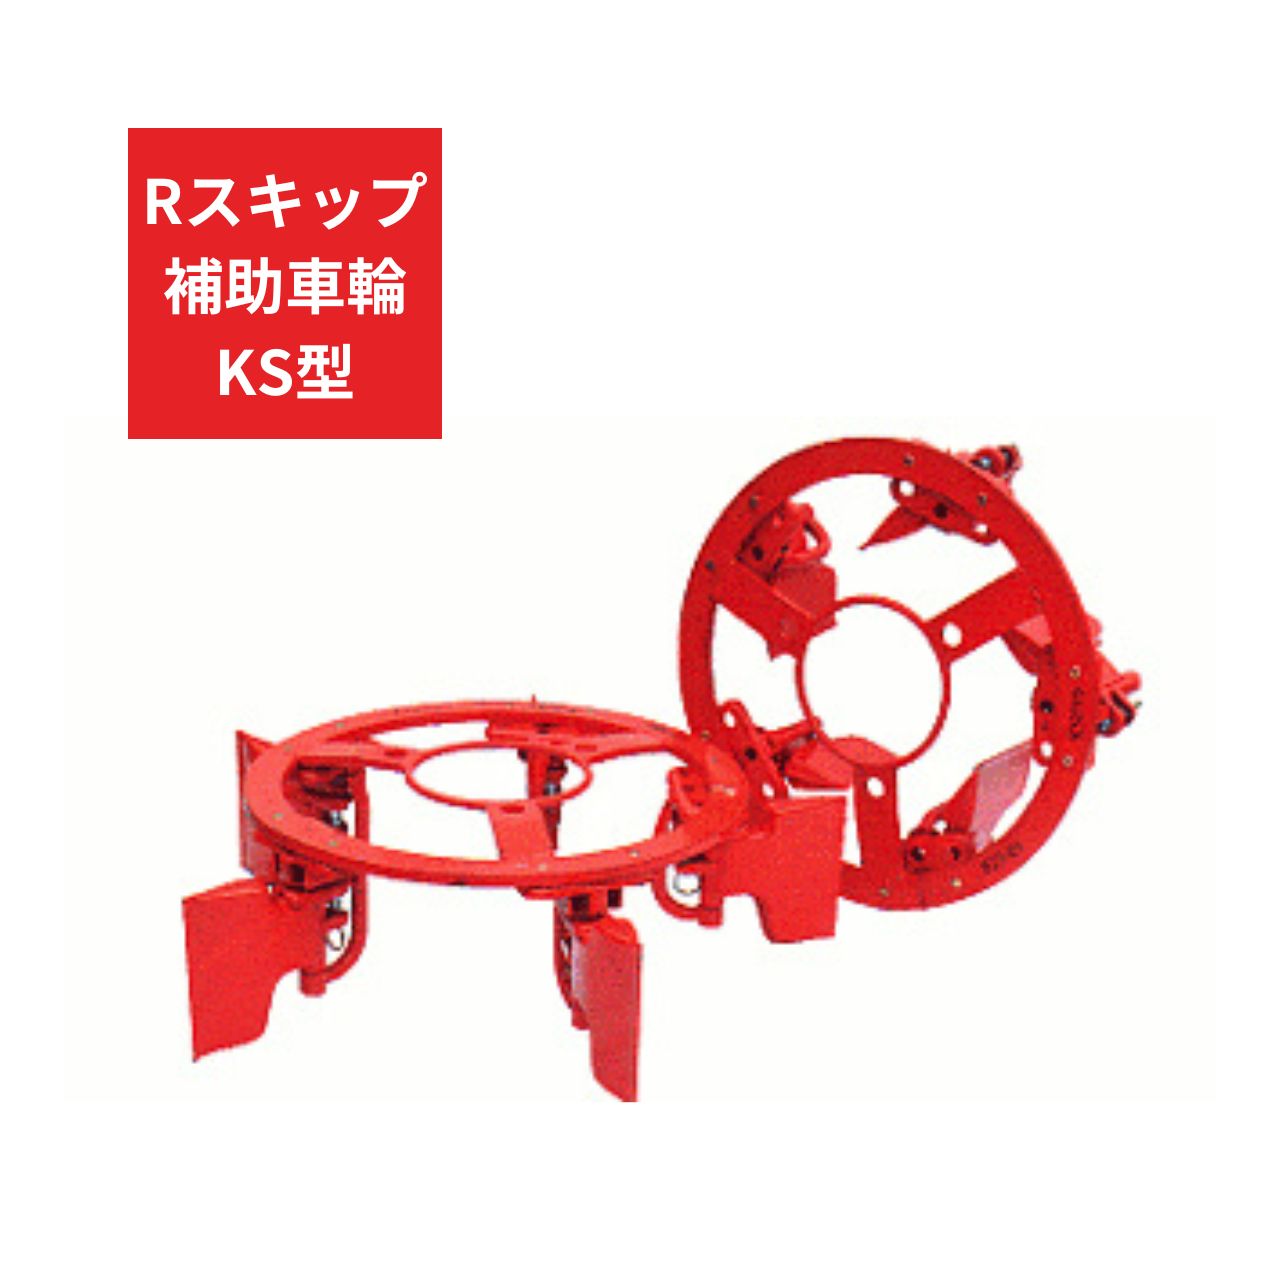 トラクター用 補助車輪 KS車輪 Rスキップ補助車輪KS ジョーニシ RKS250 12.4-24 通販